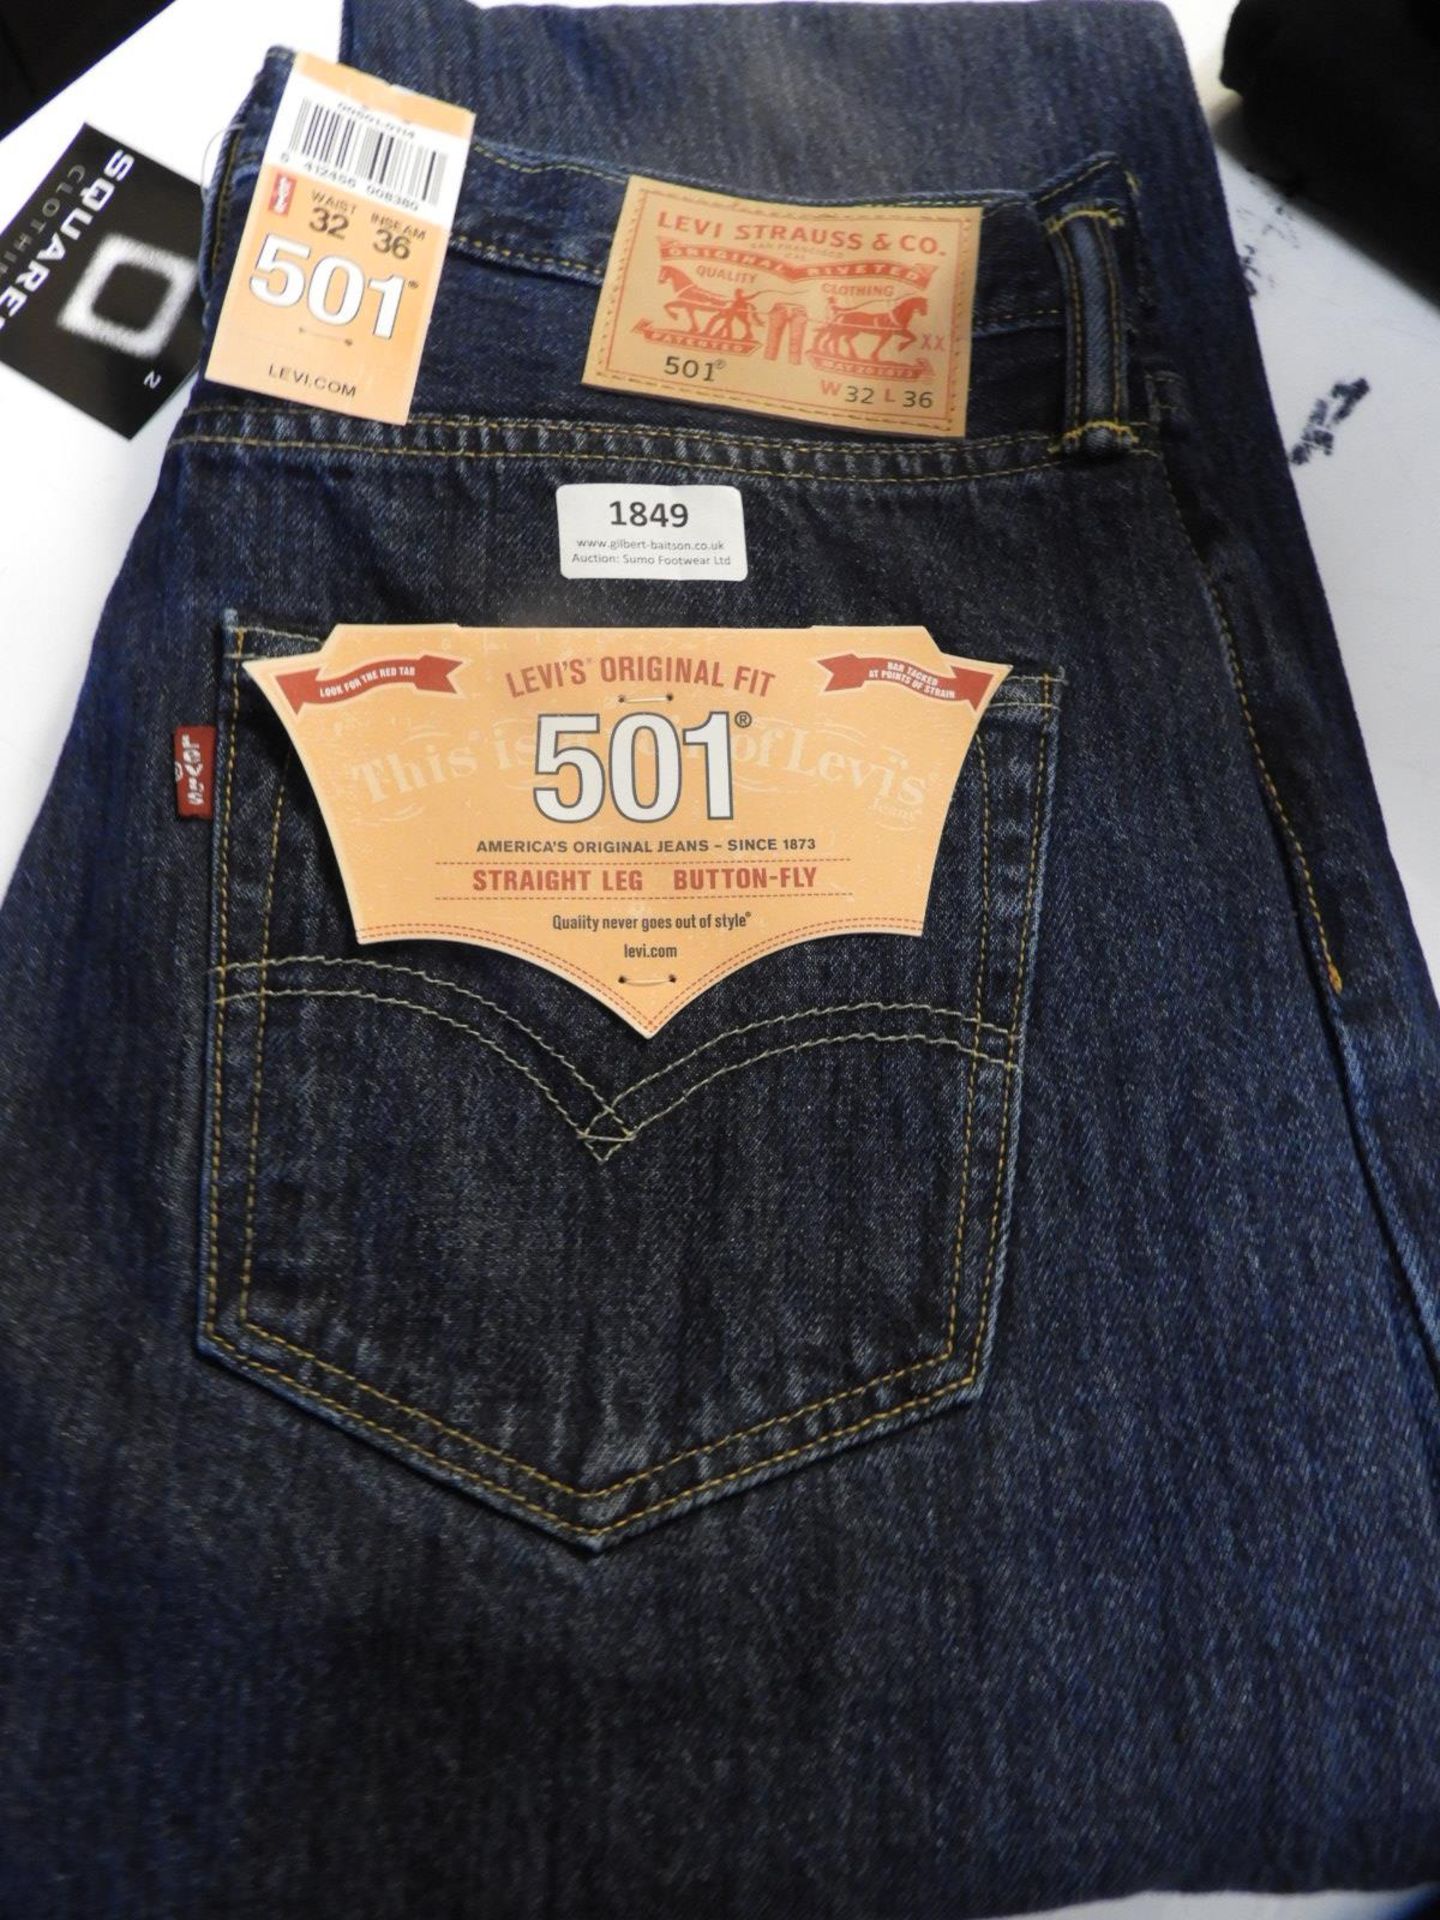 *Levi 501 Jeans Size: 32/36